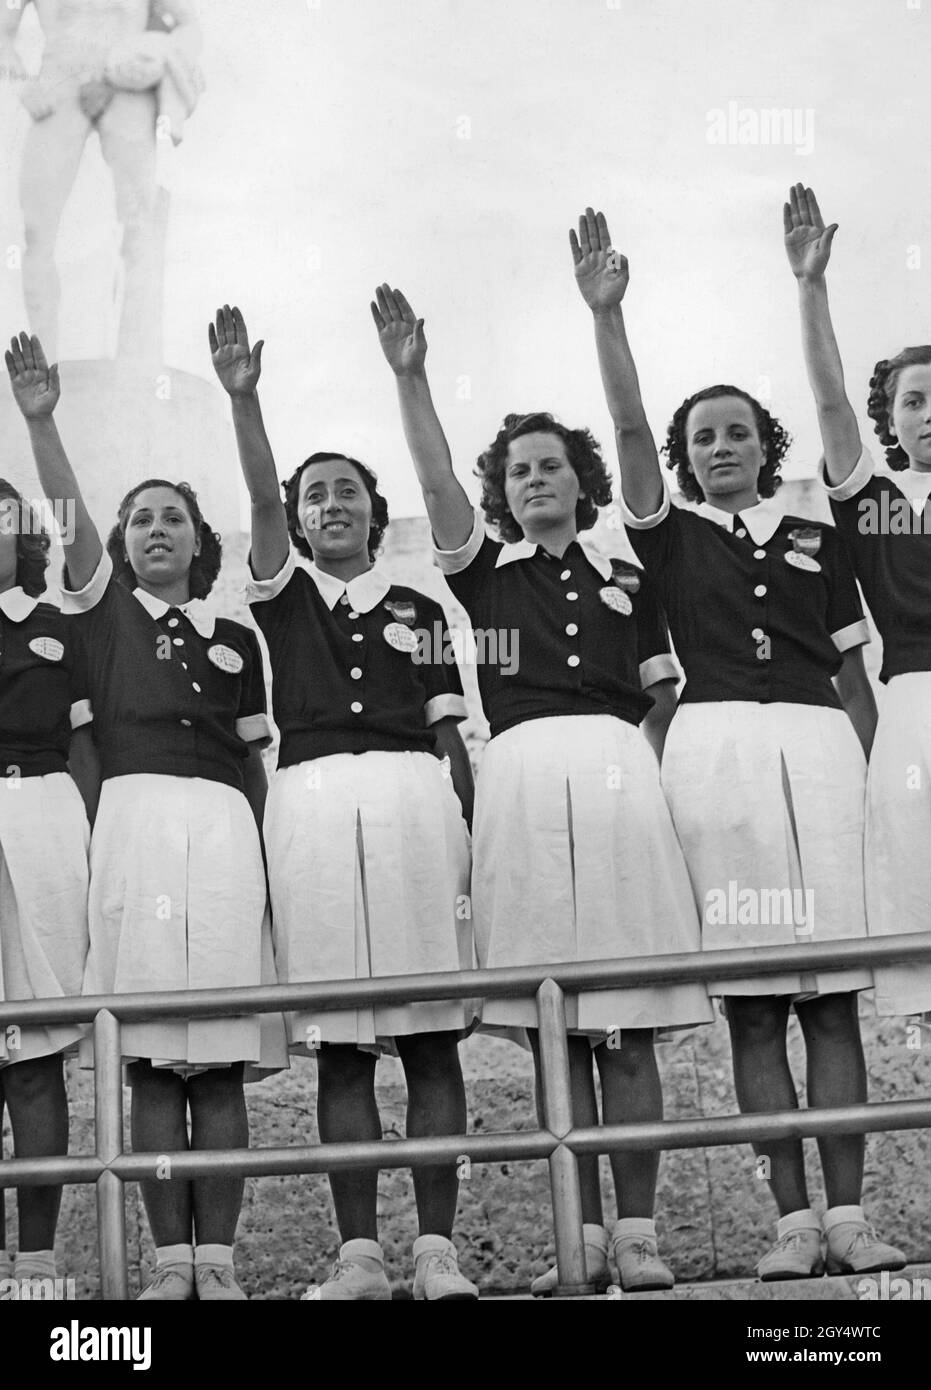 «les filles et les jeunes femmes, âgées de 16 à 20 ans, qui ont grandi avec le fascisme, lèvent leurs bras dans le salut romain.Ils sont dans le stade en marbre du Foro Mussolini (aujourd'hui Foro Italico) et appartiennent au fasciste ''Opera nazionale del dopolavoro' (OND).La photographie a été prise en 1938.[traduction automatique]' Banque D'Images